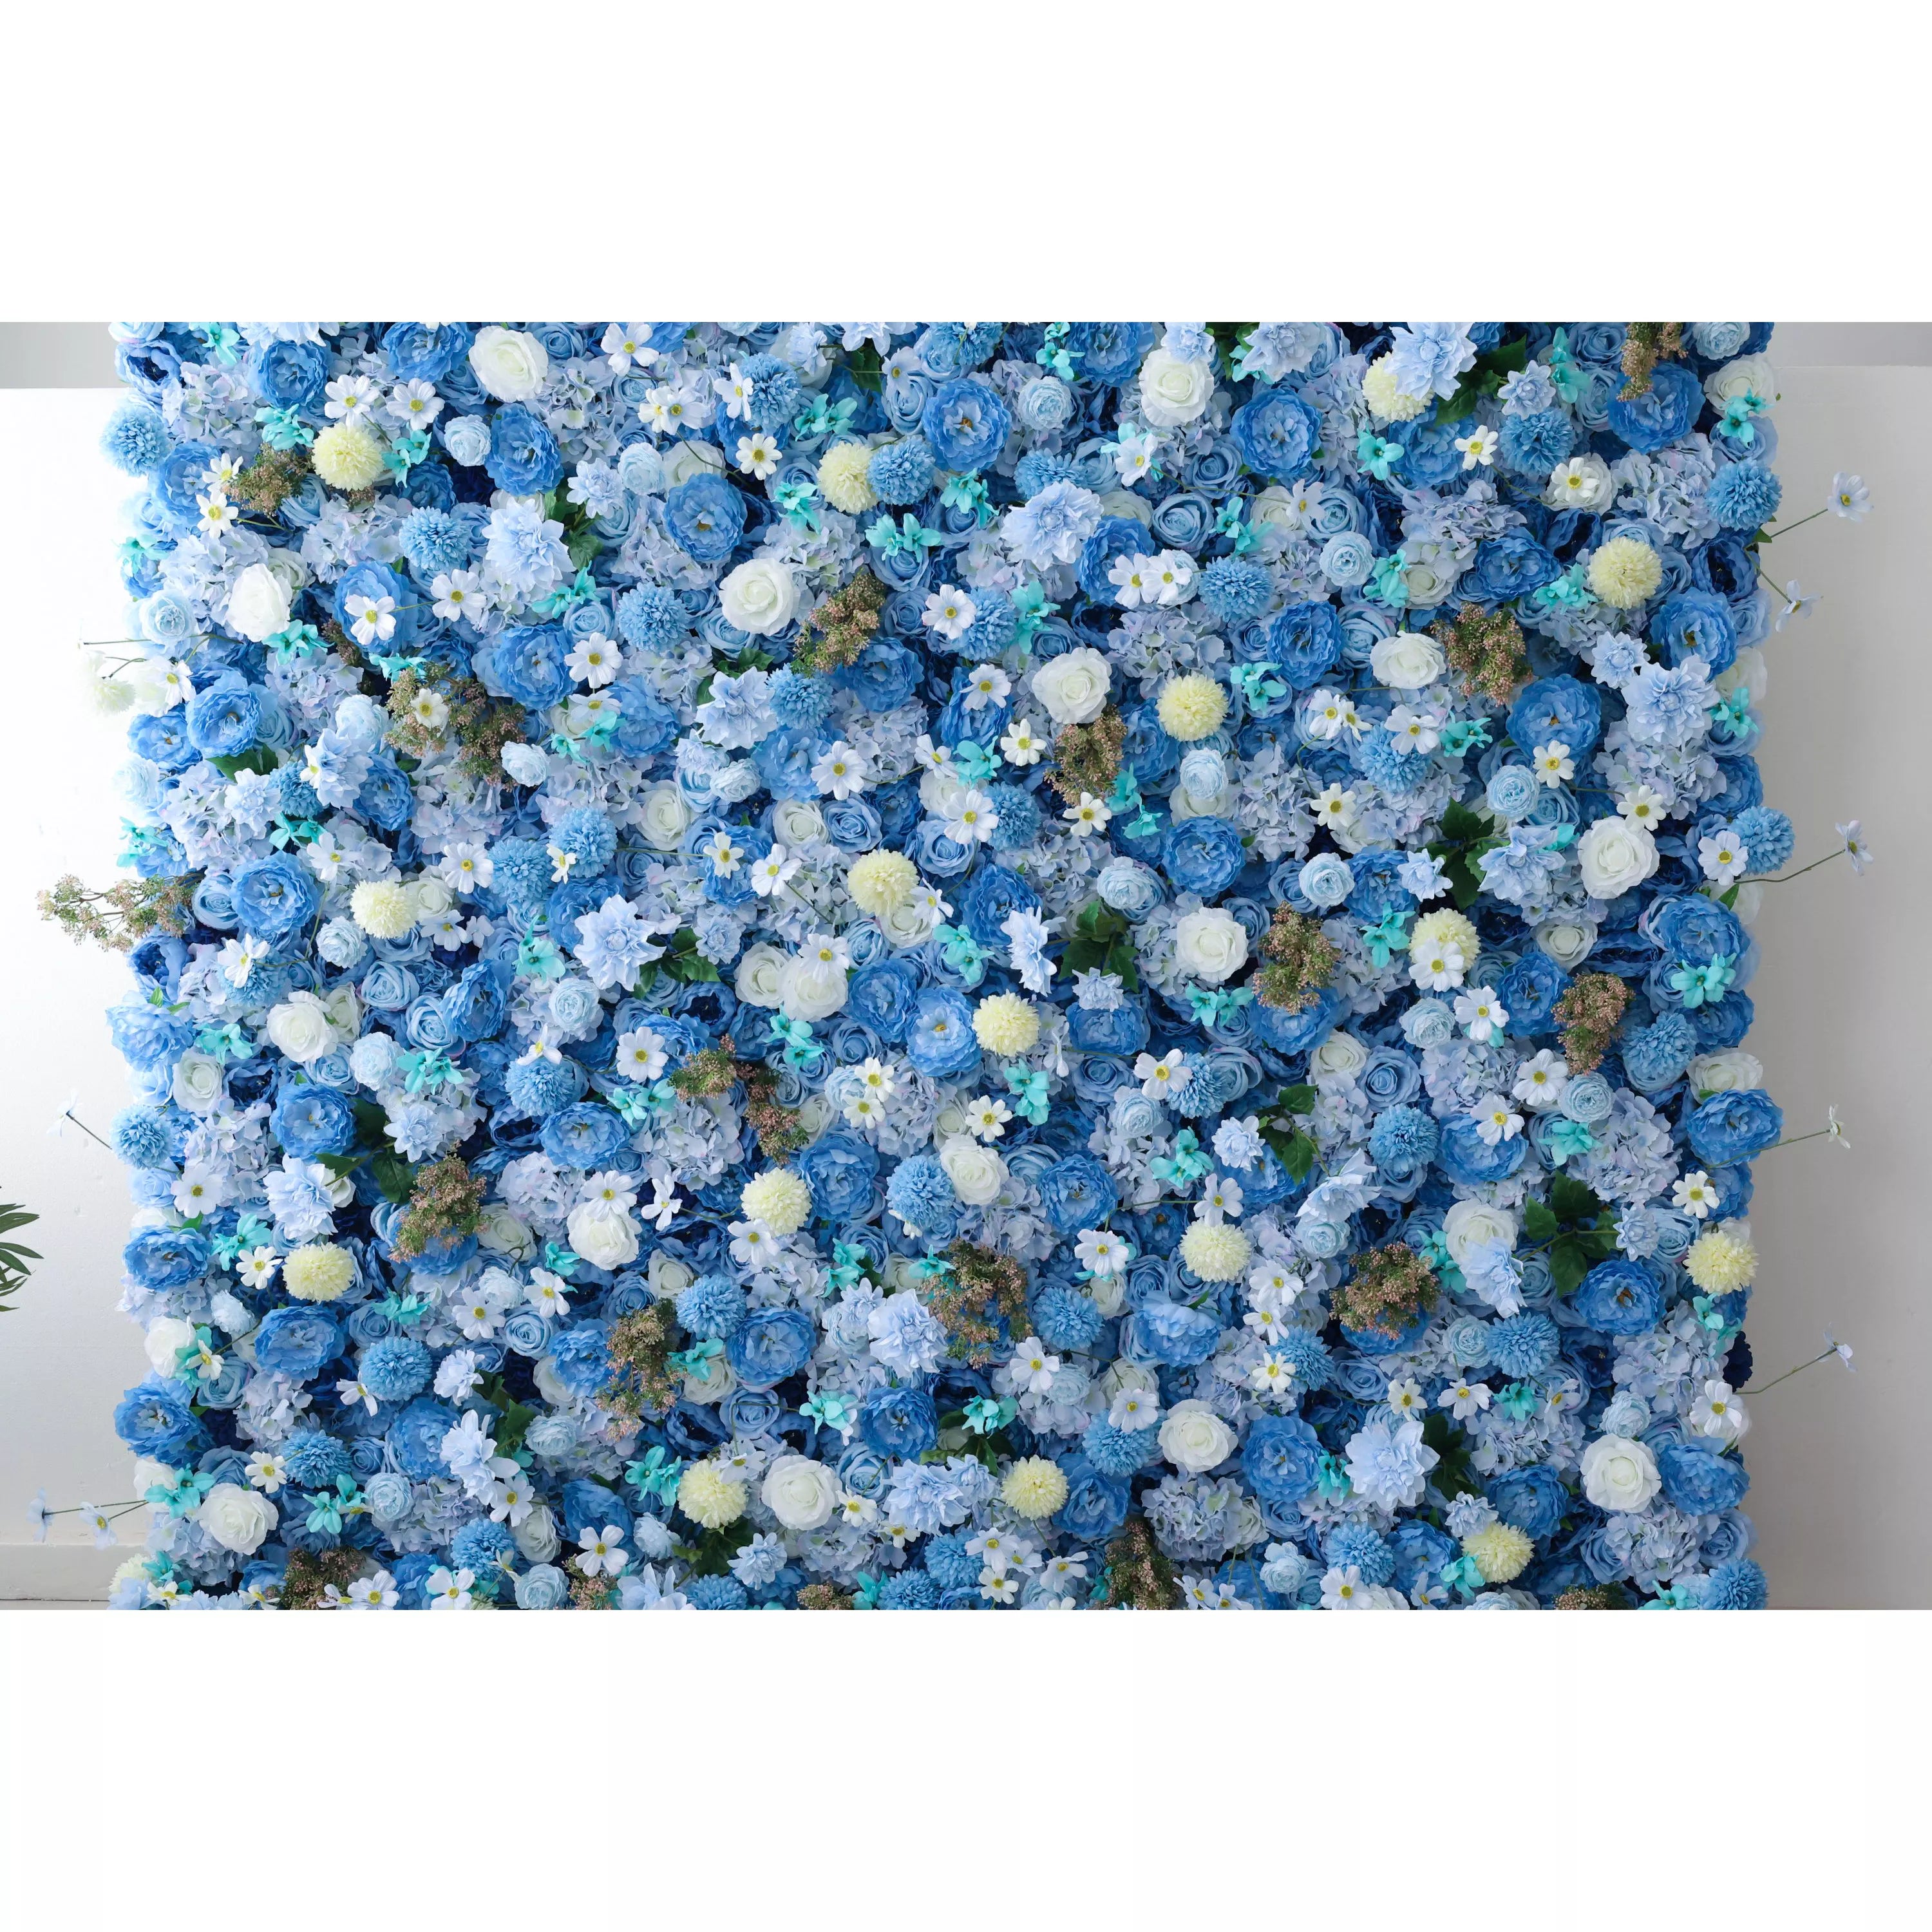 زهور فالار تقدم: الانسجام اللازوري-سيمفونية هادئة من الزهور الزرقاء والصفراء الفاتحة-جدار زهور مثالي للمواضيع البحرية ، والأحداث الداخلية الهادئة